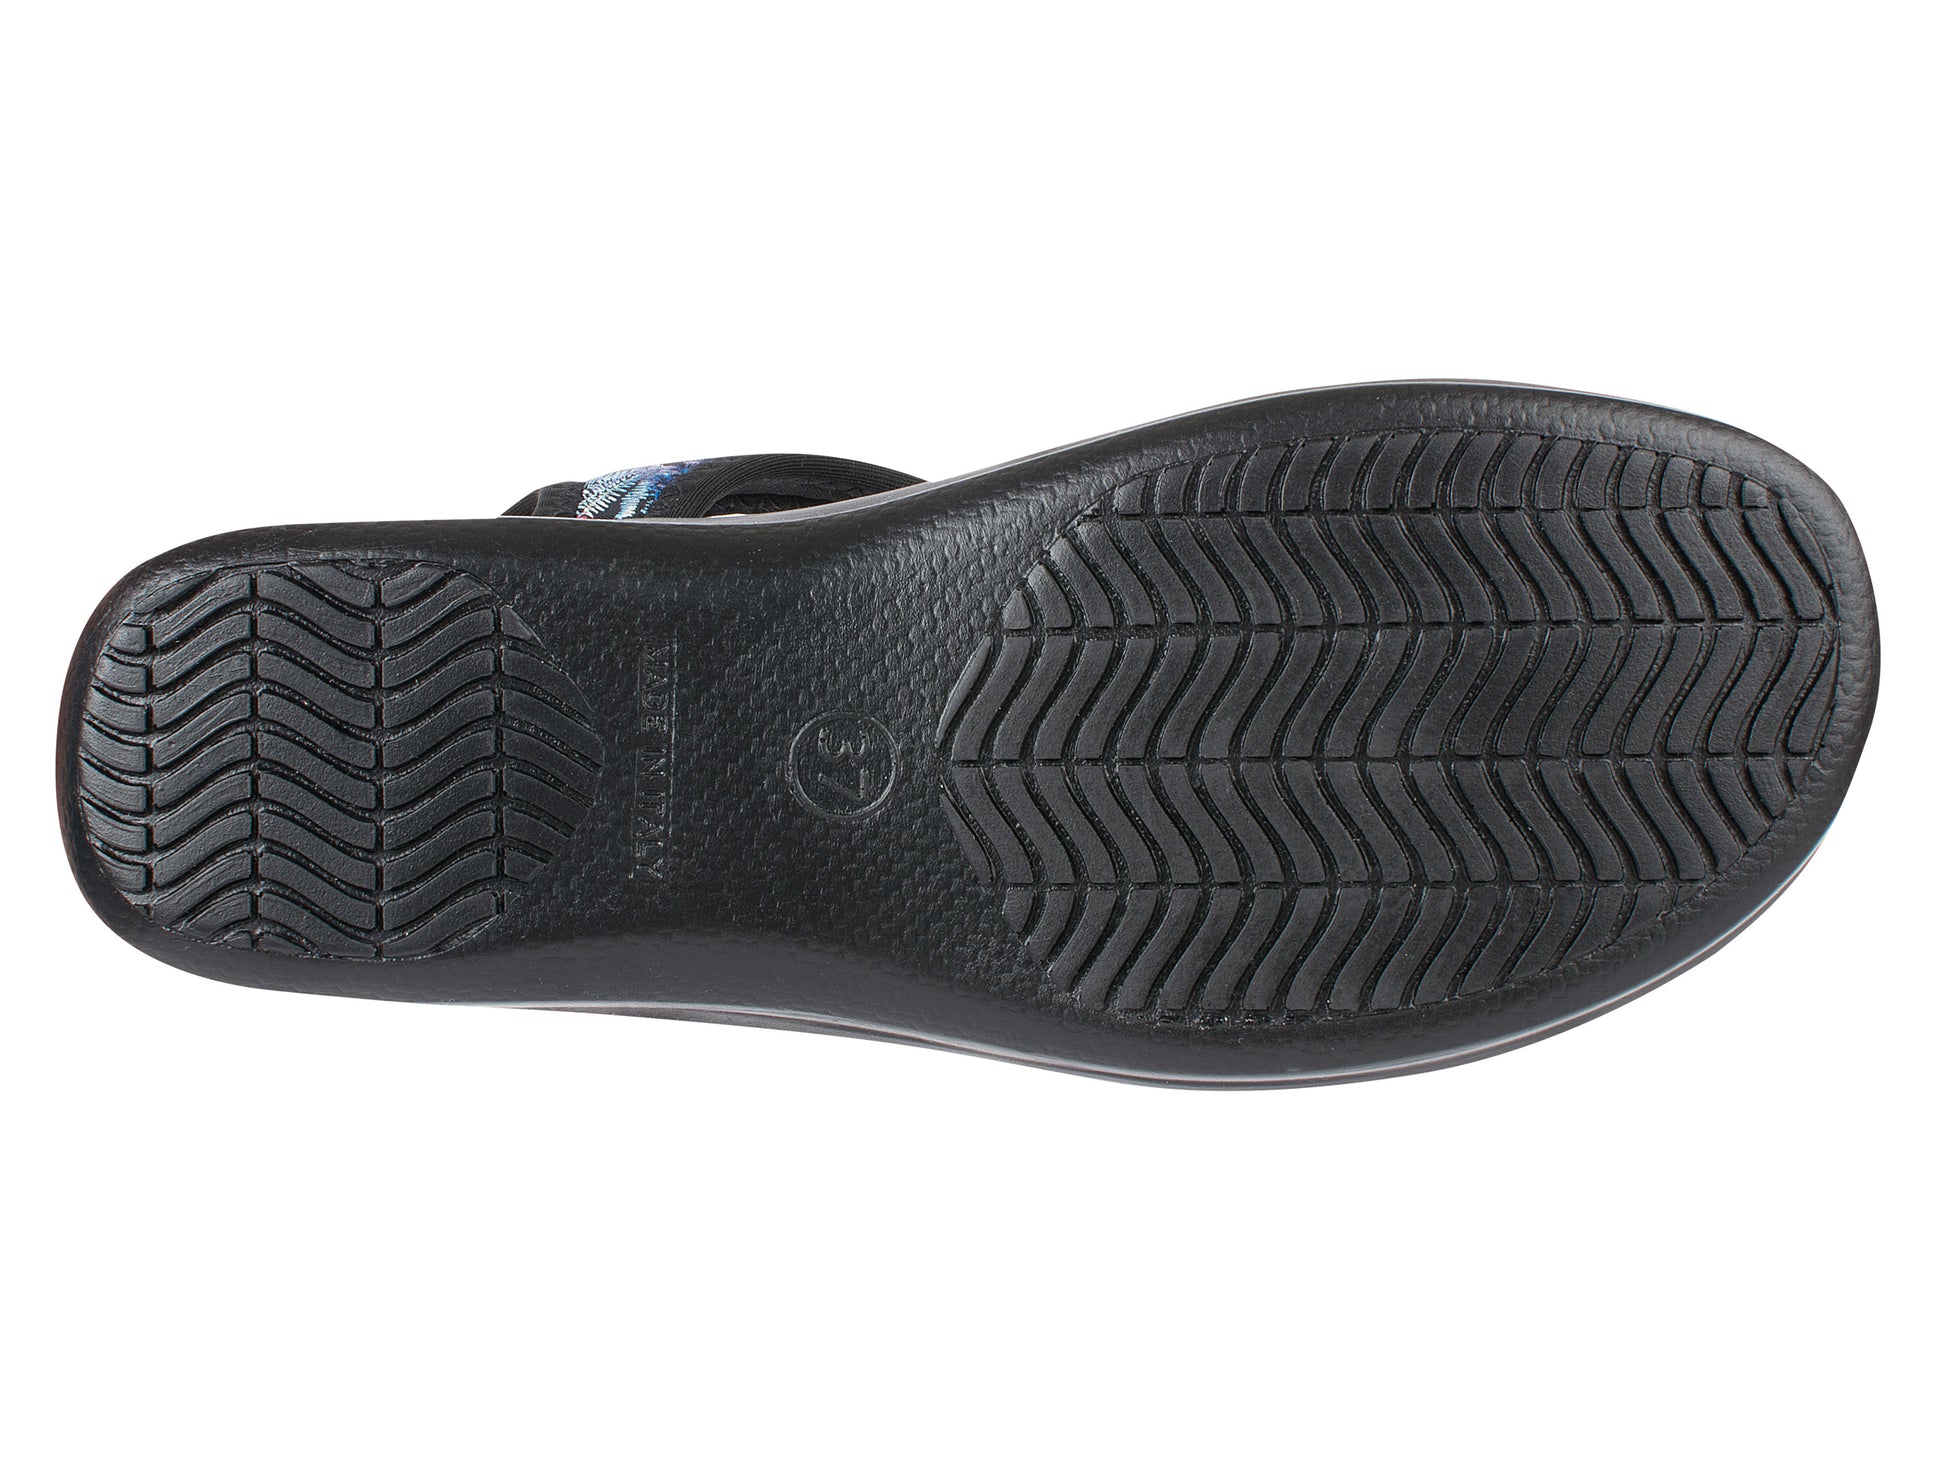 Die Sohle der Damen Stretch Sandalette Modell Stretch 05 von Aerosoft in Farbe schwarz